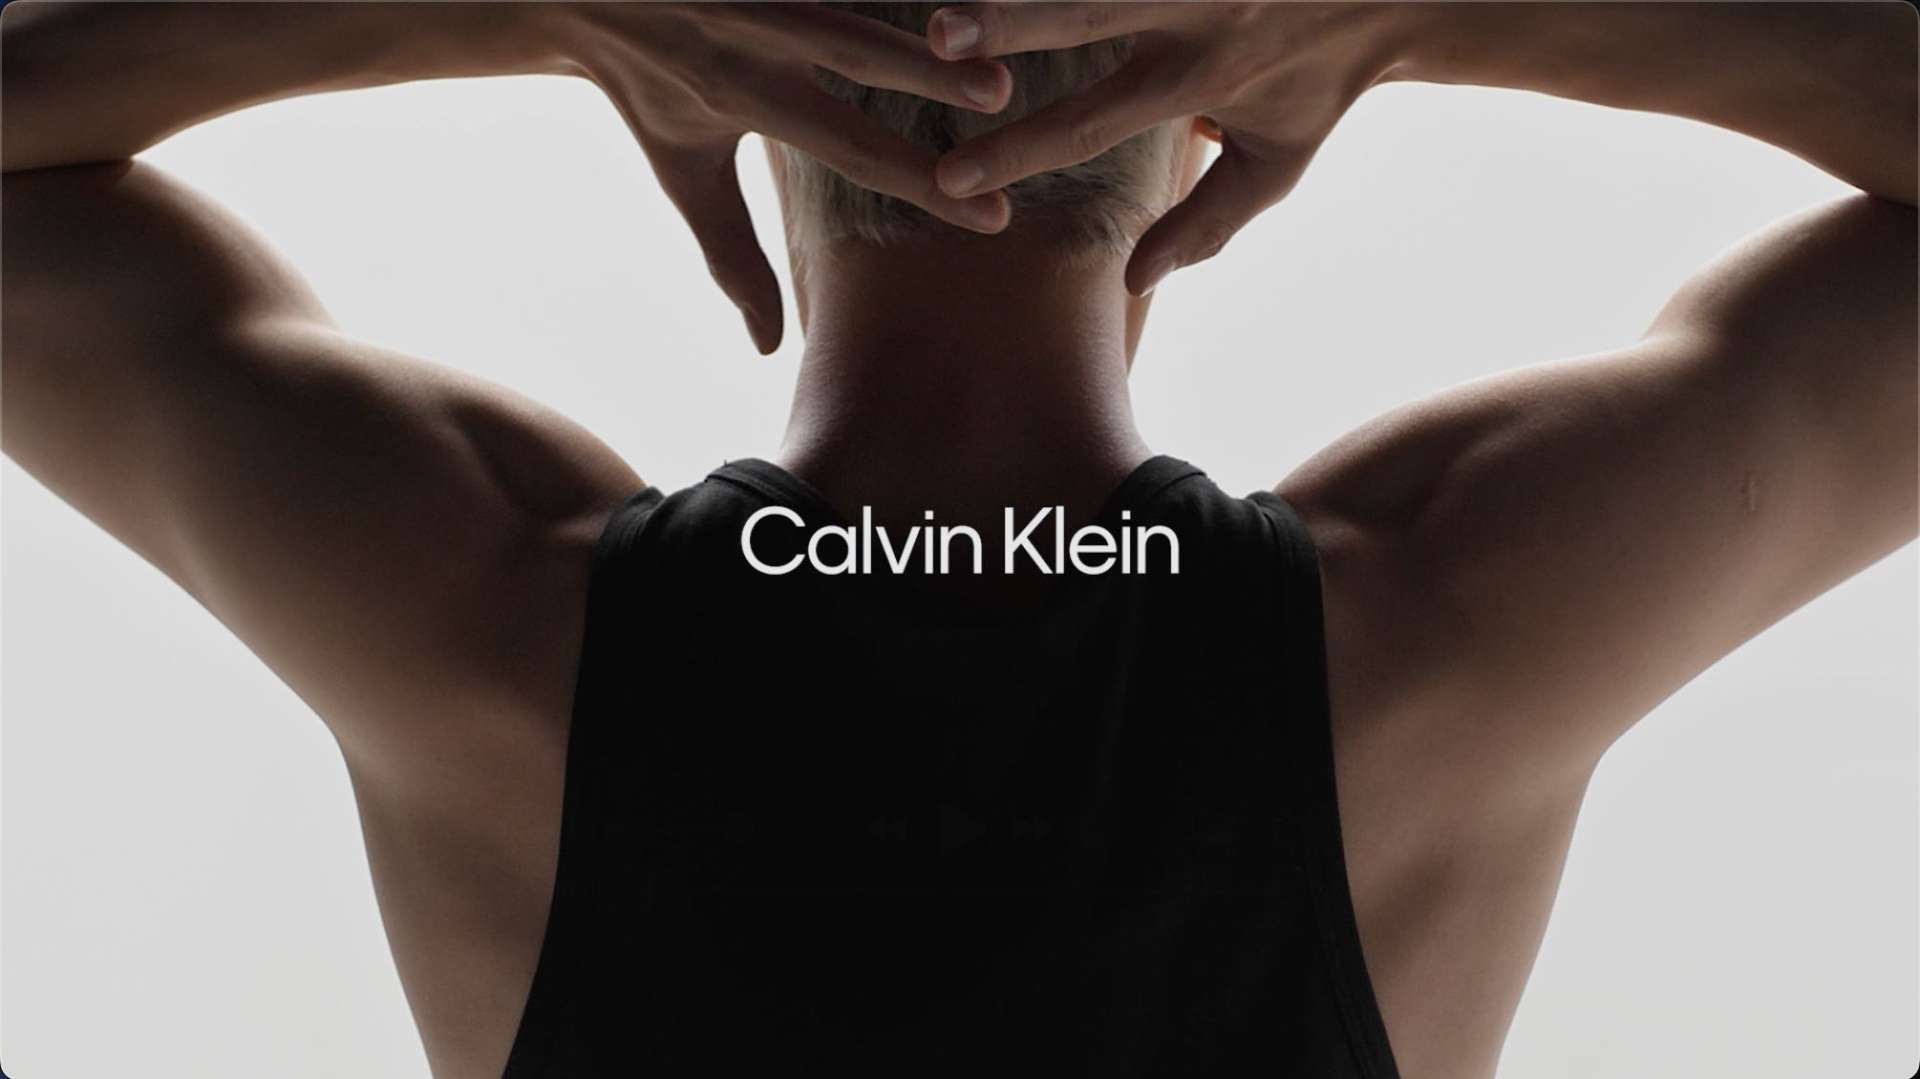 Calvin Klein 618 campaign